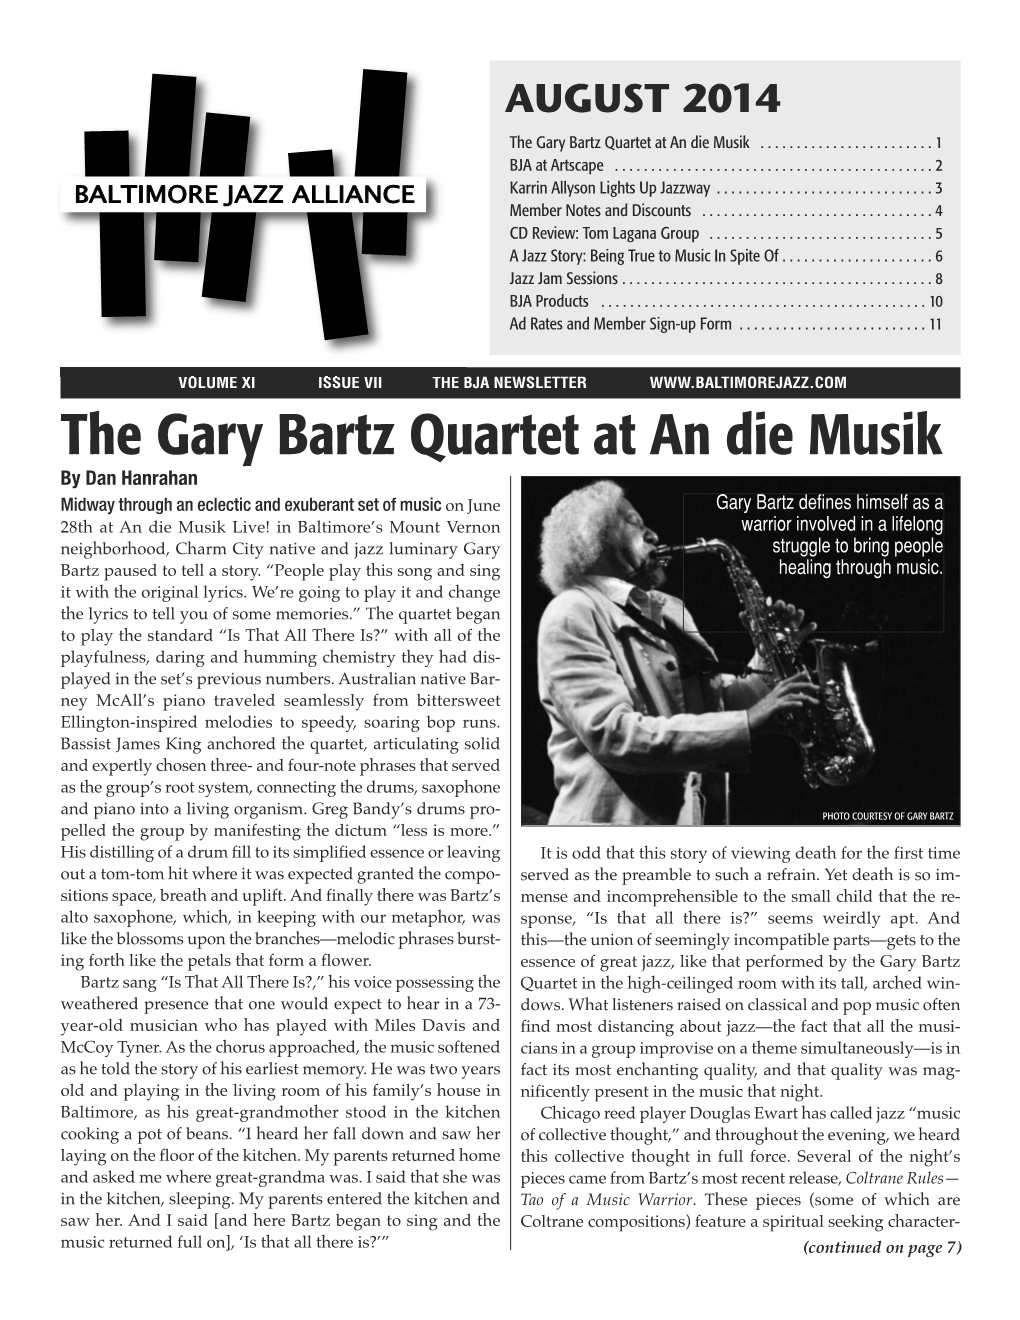 The Gary Bartz Quartet at an Die Musik